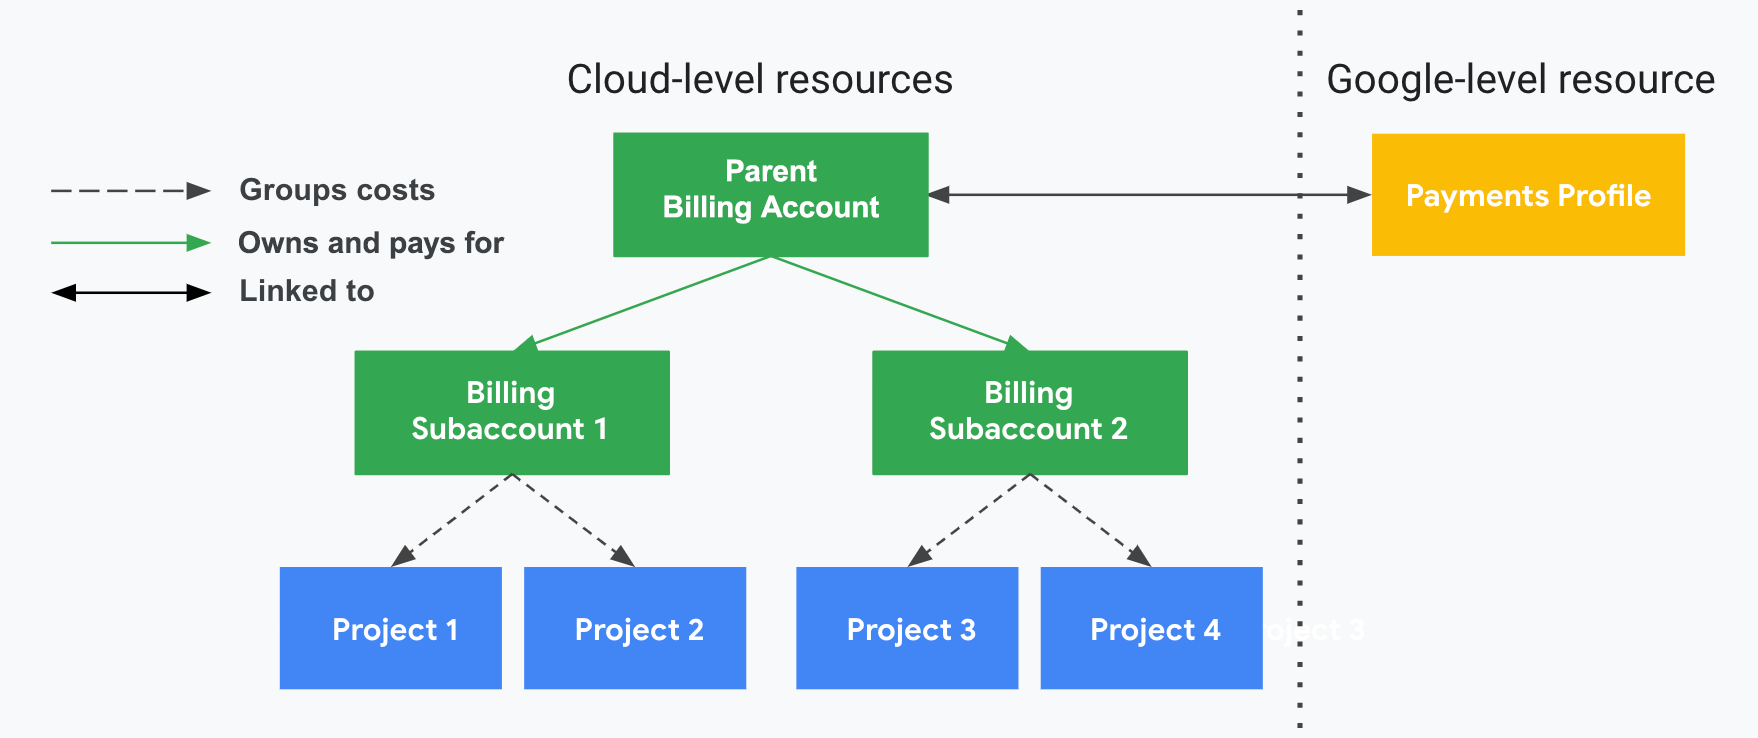 说明了项目与 Cloud Billing 账号、Cloud Billing 子账号以及您的 Google 付款资料之间的关系。一侧显示了您的 Google Cloud 级资源（Cloud Billing 账号、子账号和关联项目），另一侧显示了您的 Google 级资源（Google 付款资料），两侧由垂直虚线分隔。项目使用费按关联的 Cloud Billing 子账号归为一组并计算小计金额。子账号由转销商的父级 Cloud Billing 账号支付，该账号已与该转销商的 Google 付款资料相关联。